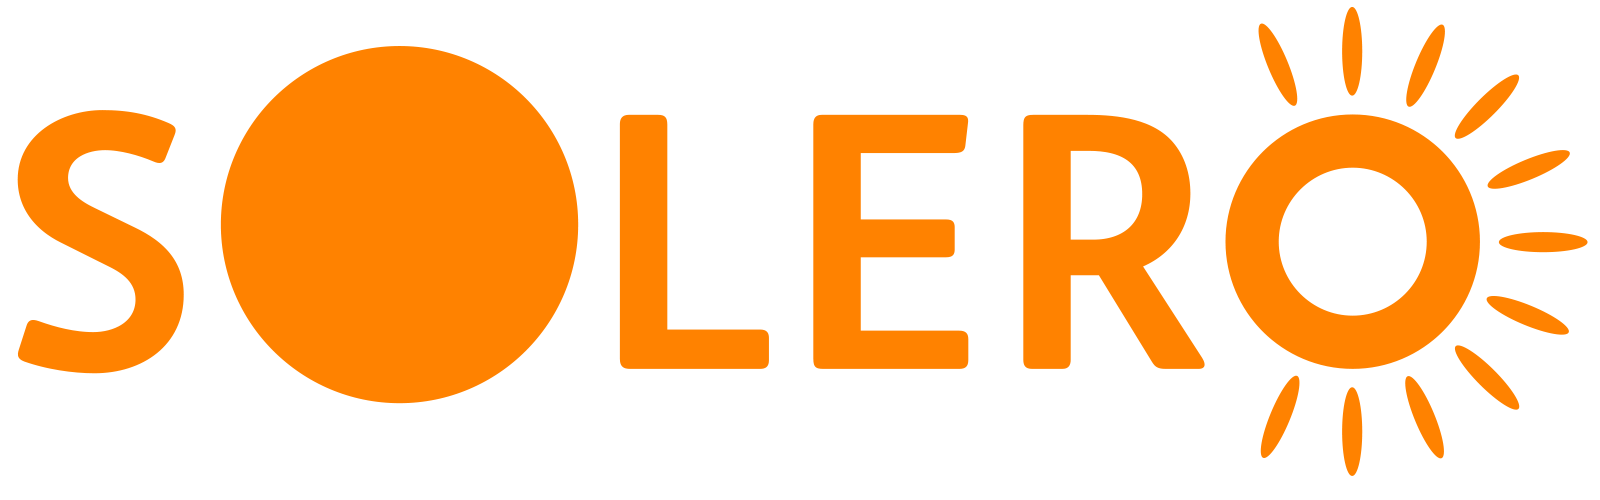 SOLERO Logo